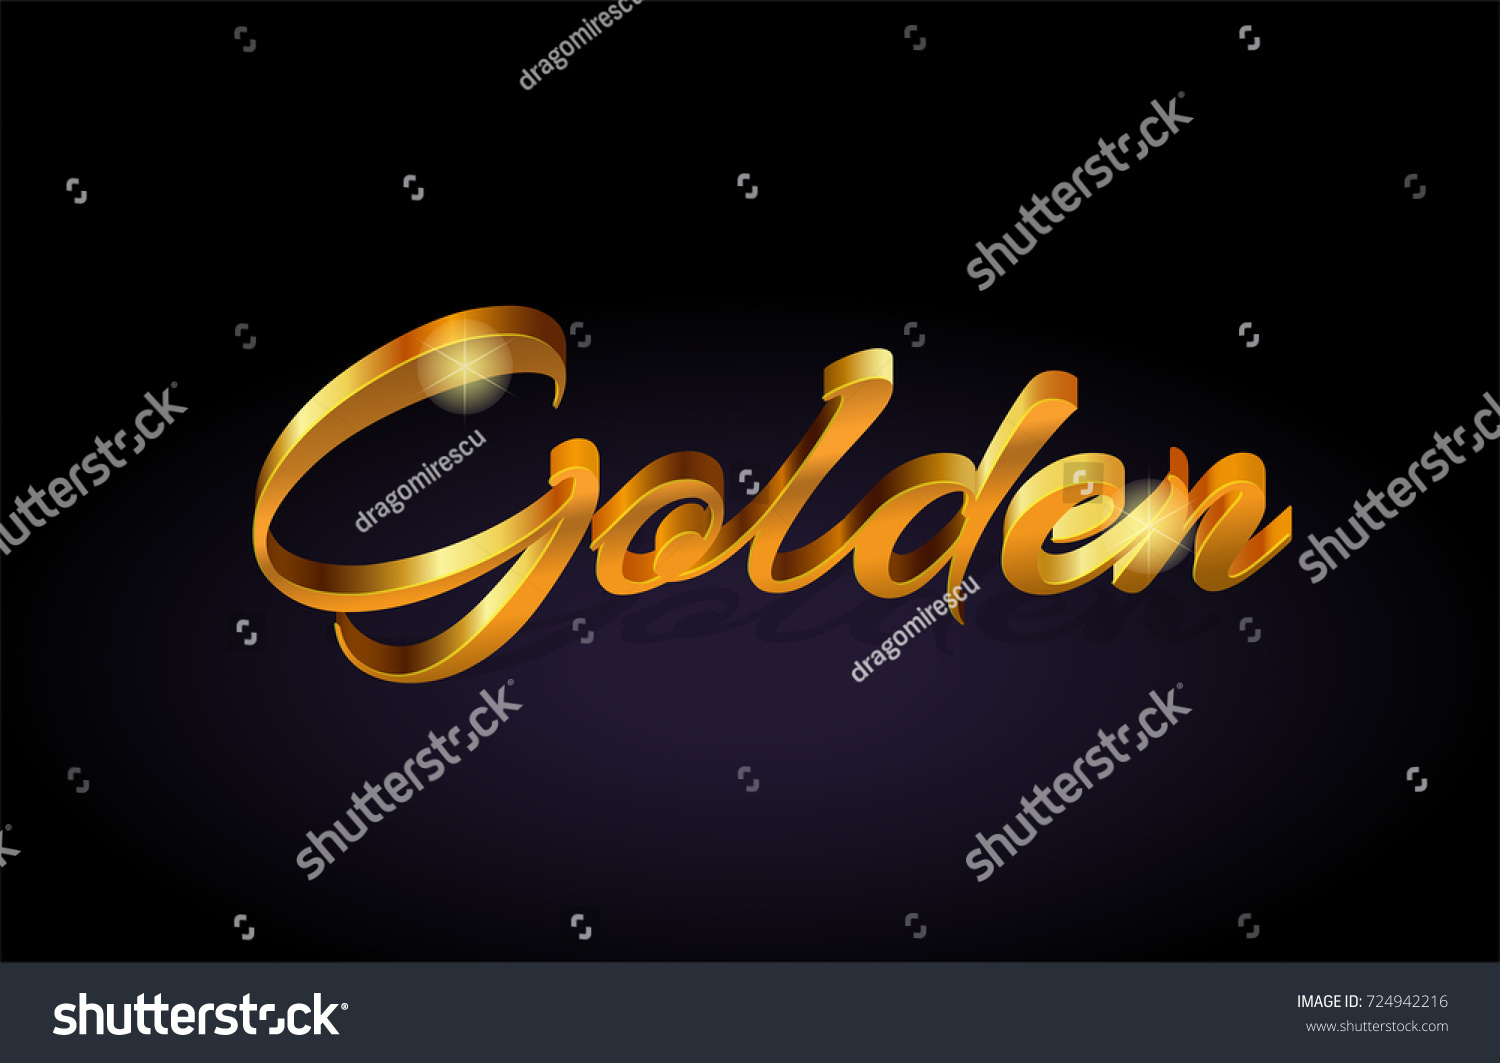 Текст золотого цвета. Golden надпись. Слово золото. Золотые слова. Business надпись золотом.